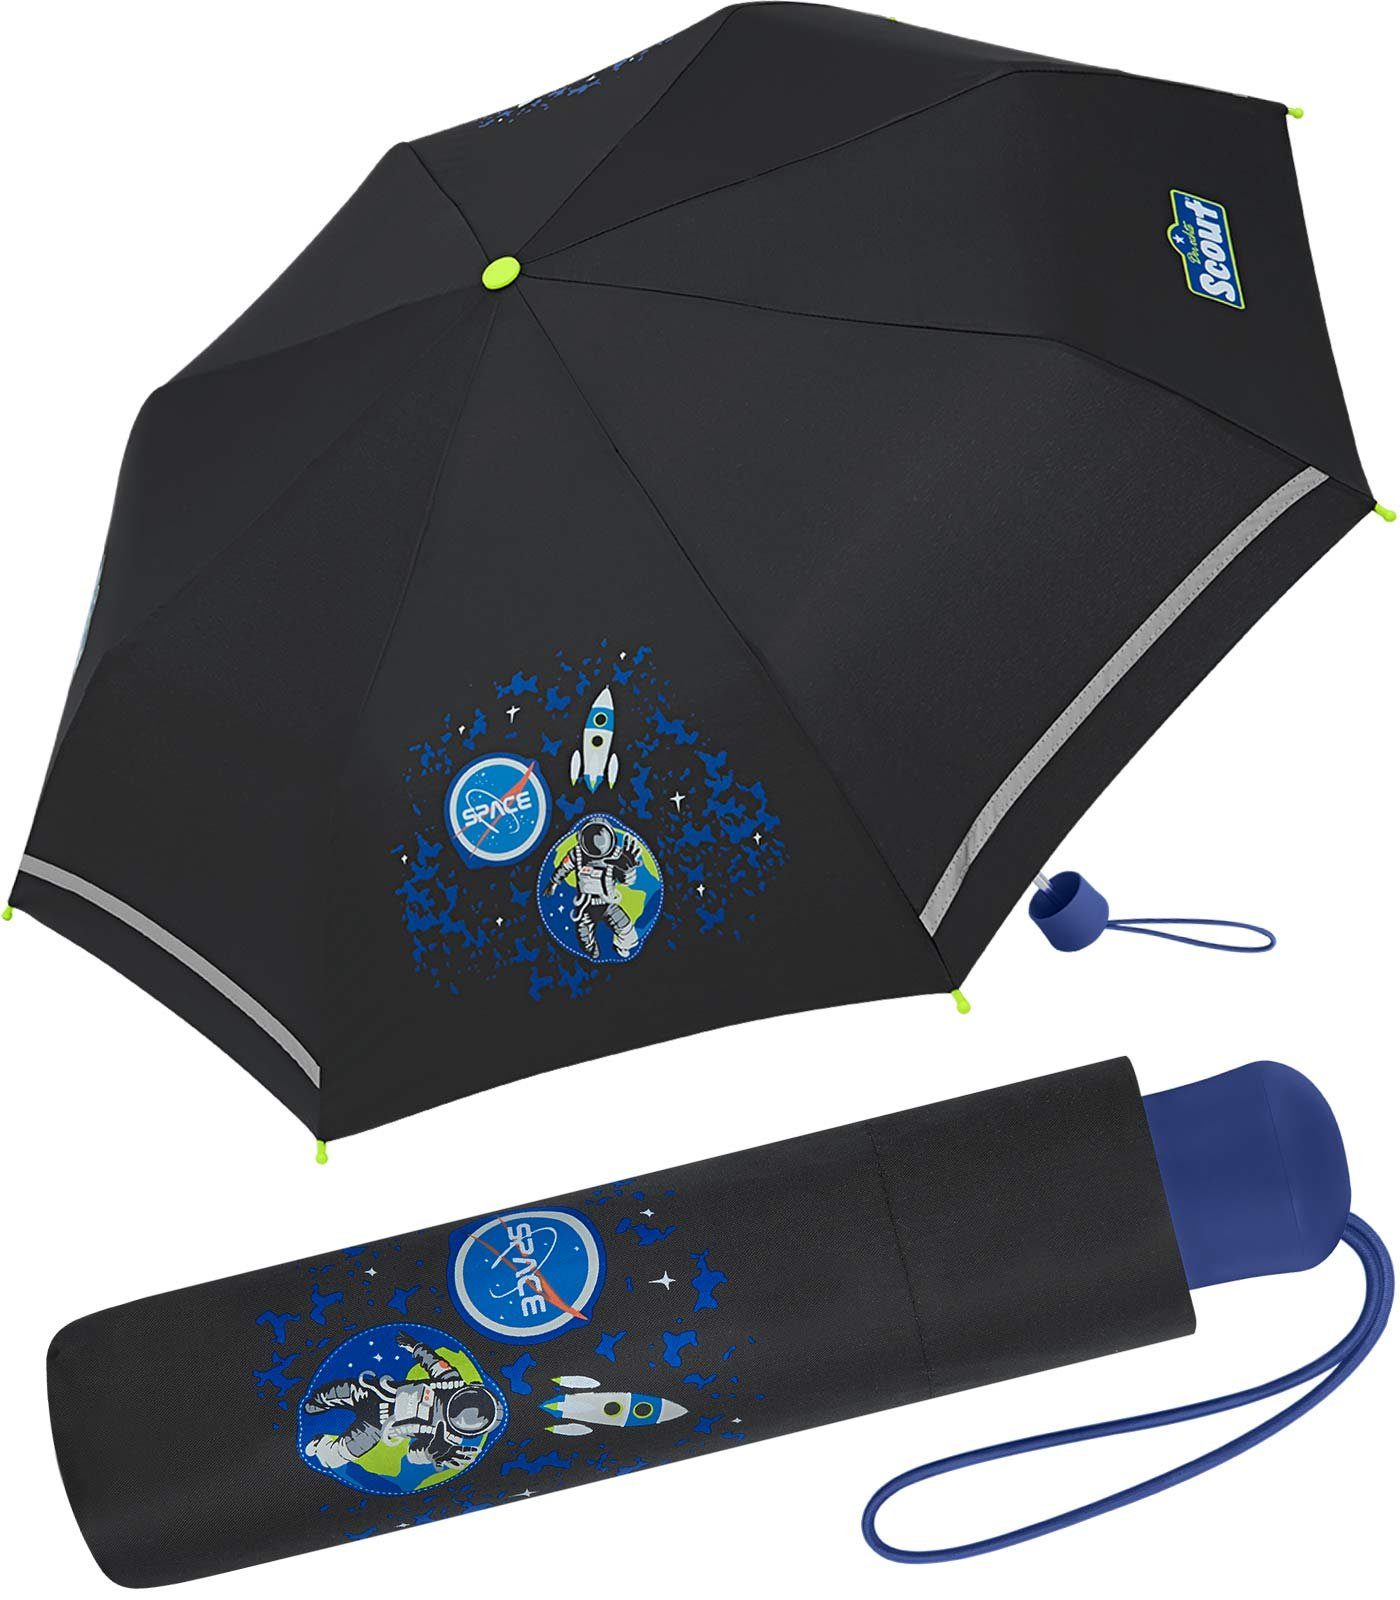 Scout Taschenregenschirm Black Galaxy - Mini Kinderschirm, extra leicht für Kinder gemacht, reflektierend und bedruckt